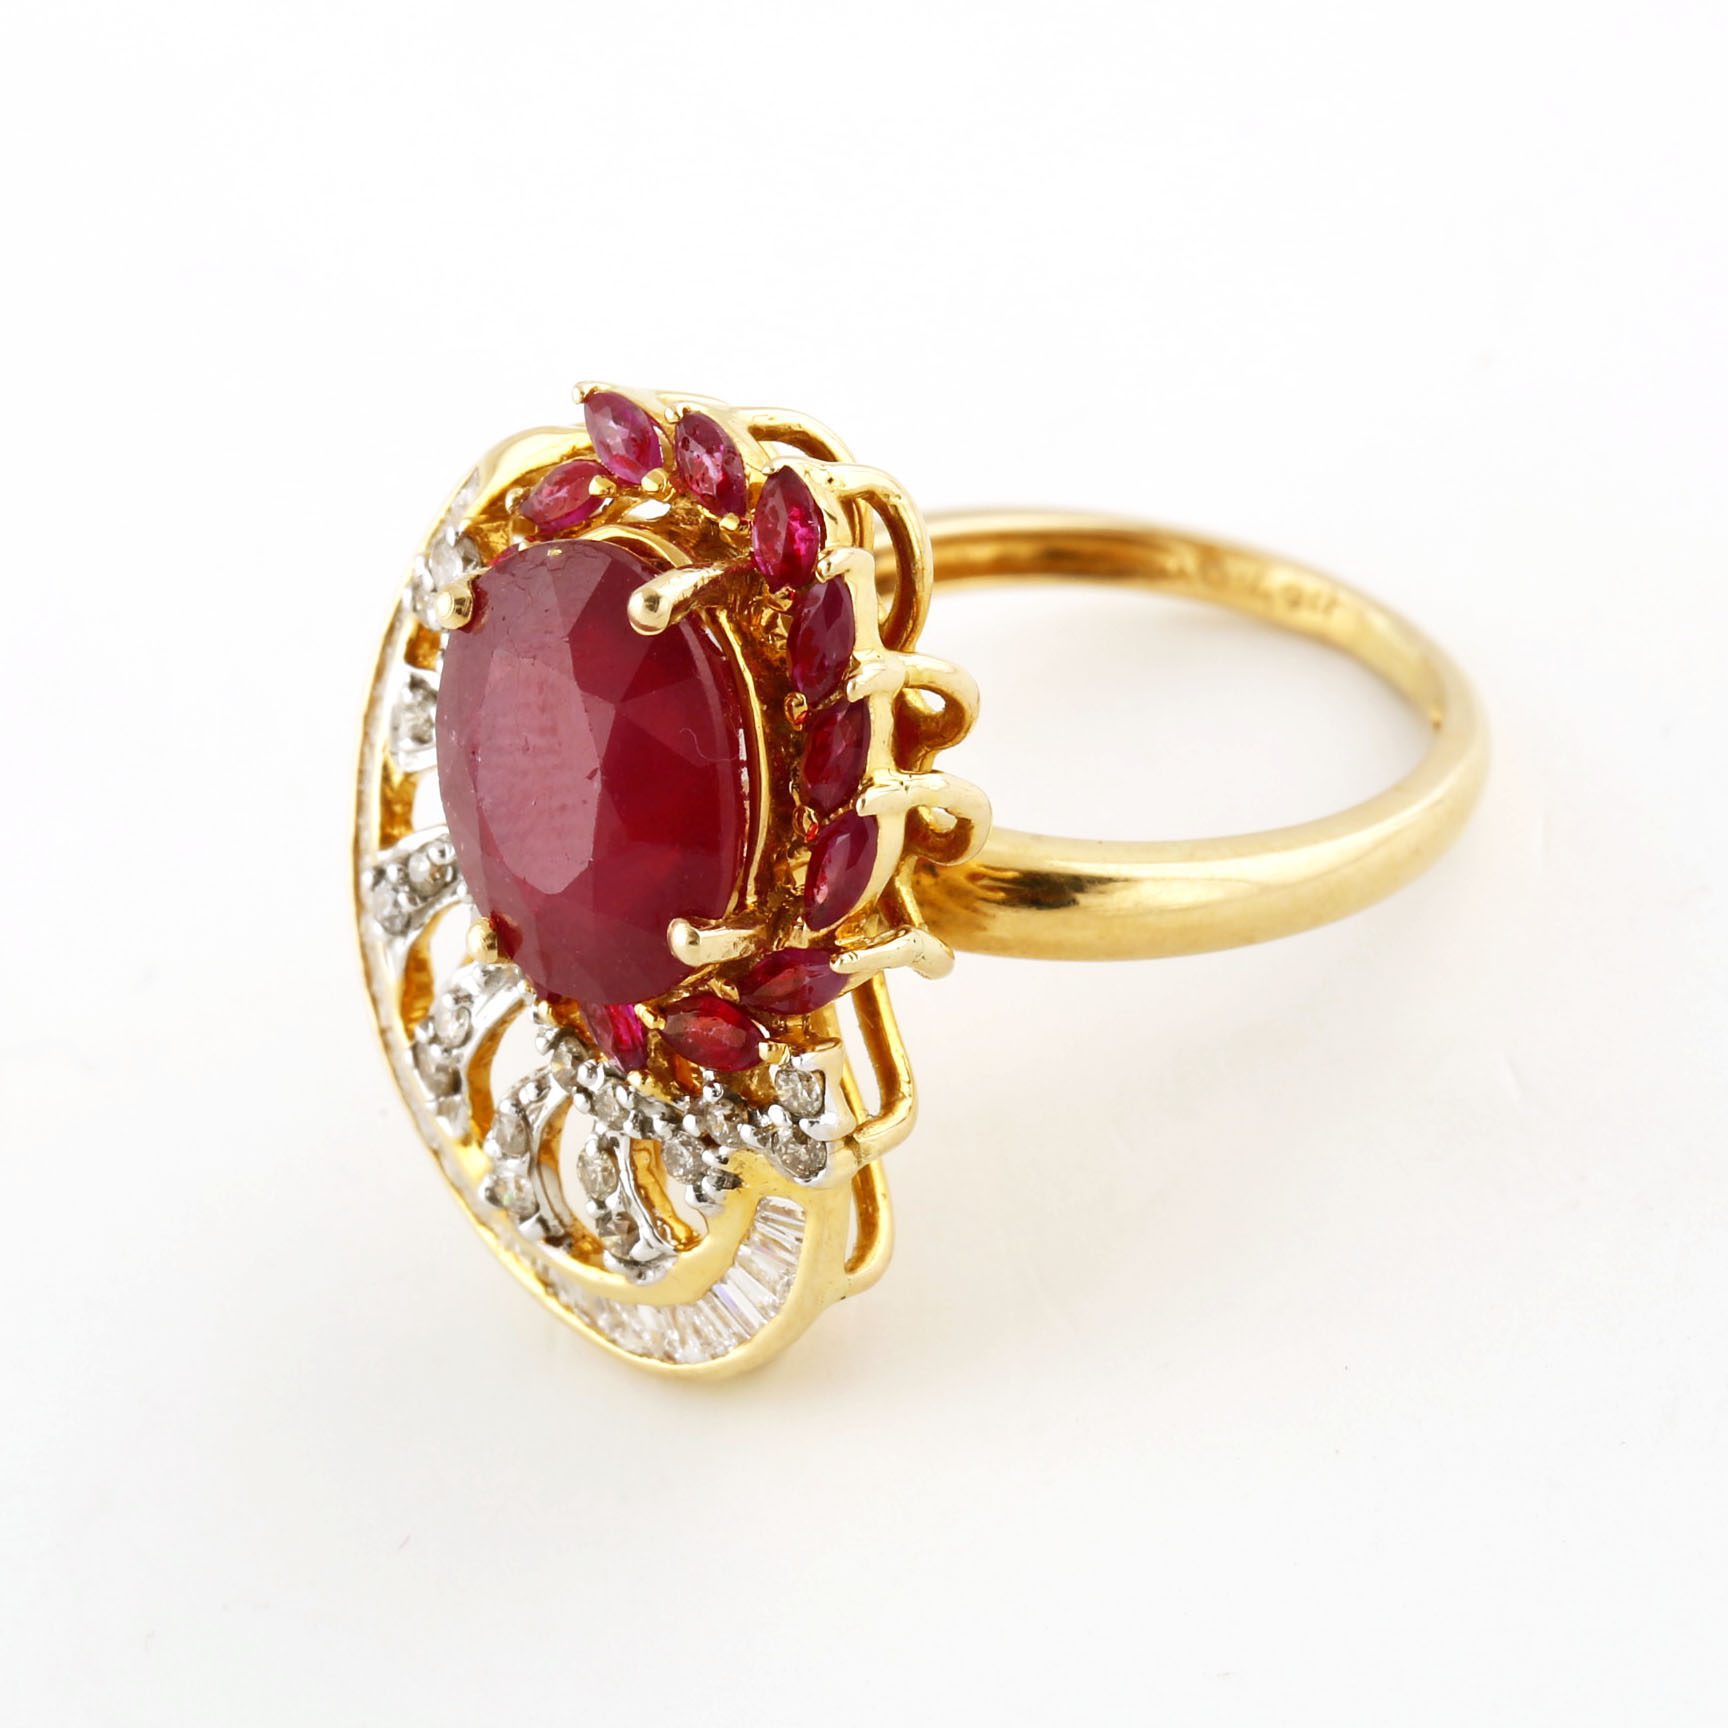 Buy Stunning Rose Gold Ring Online | ORRA